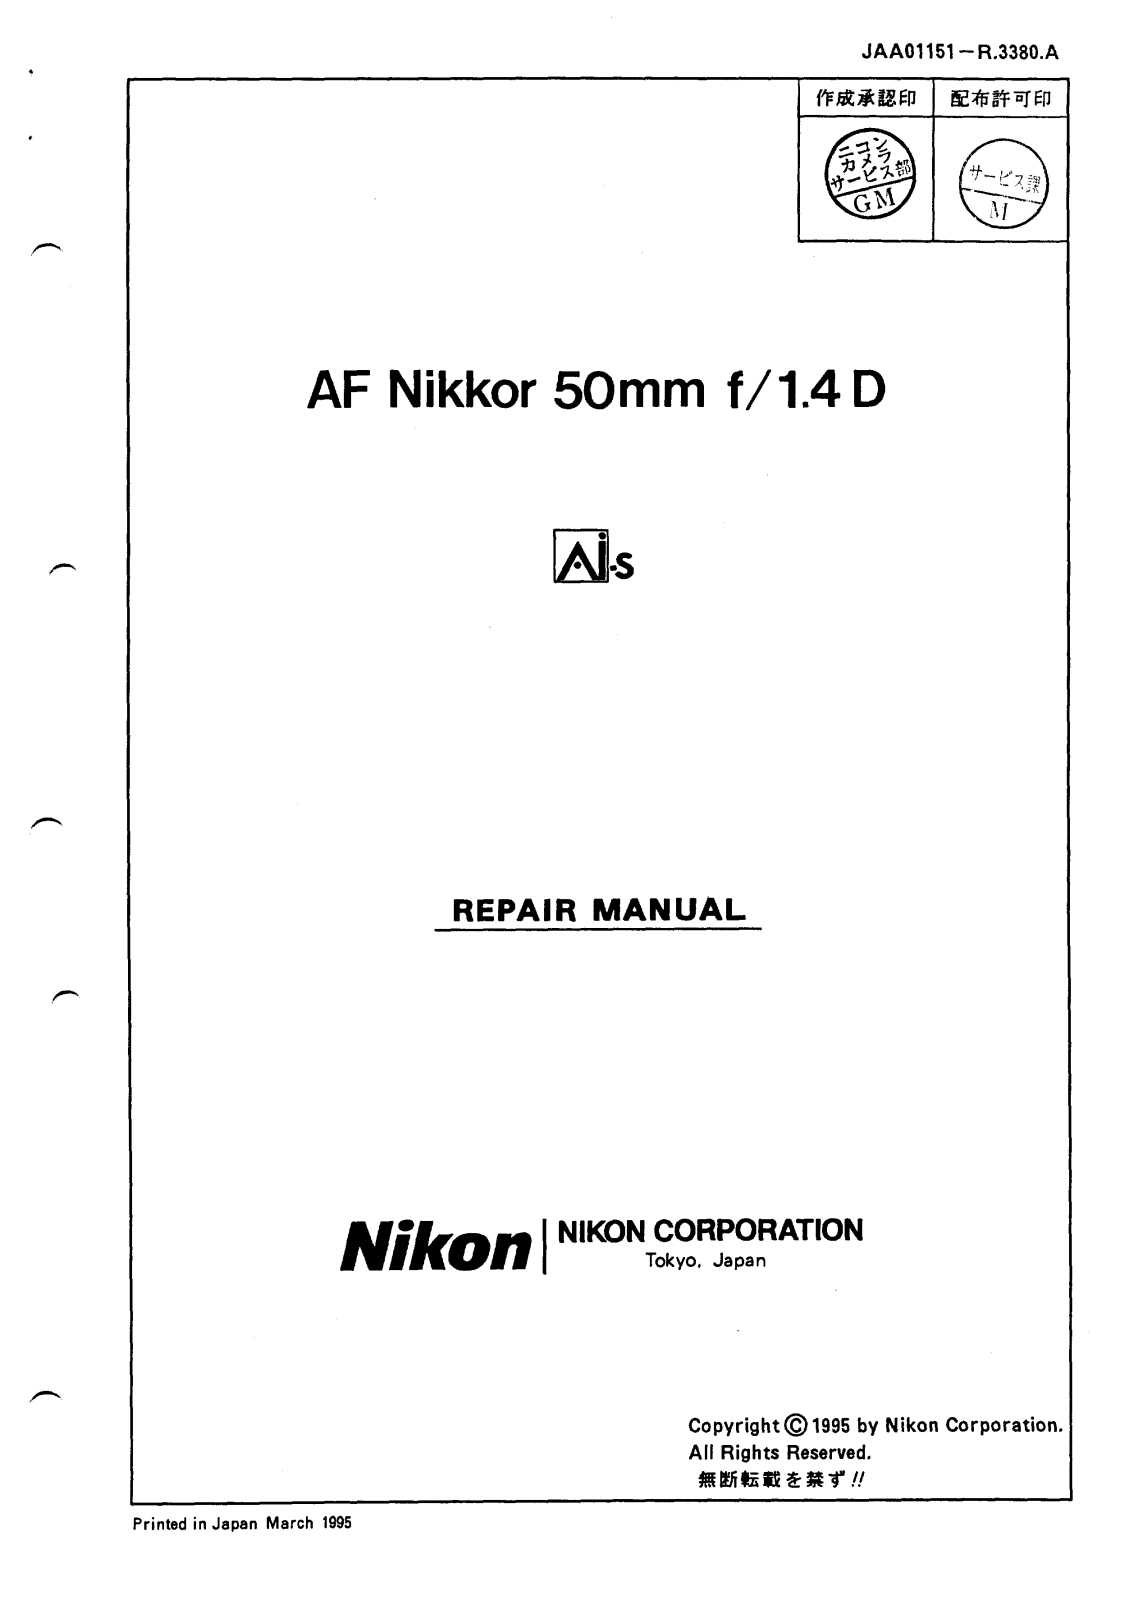 NIKON AF Nikkor 35-70 Repair Manual